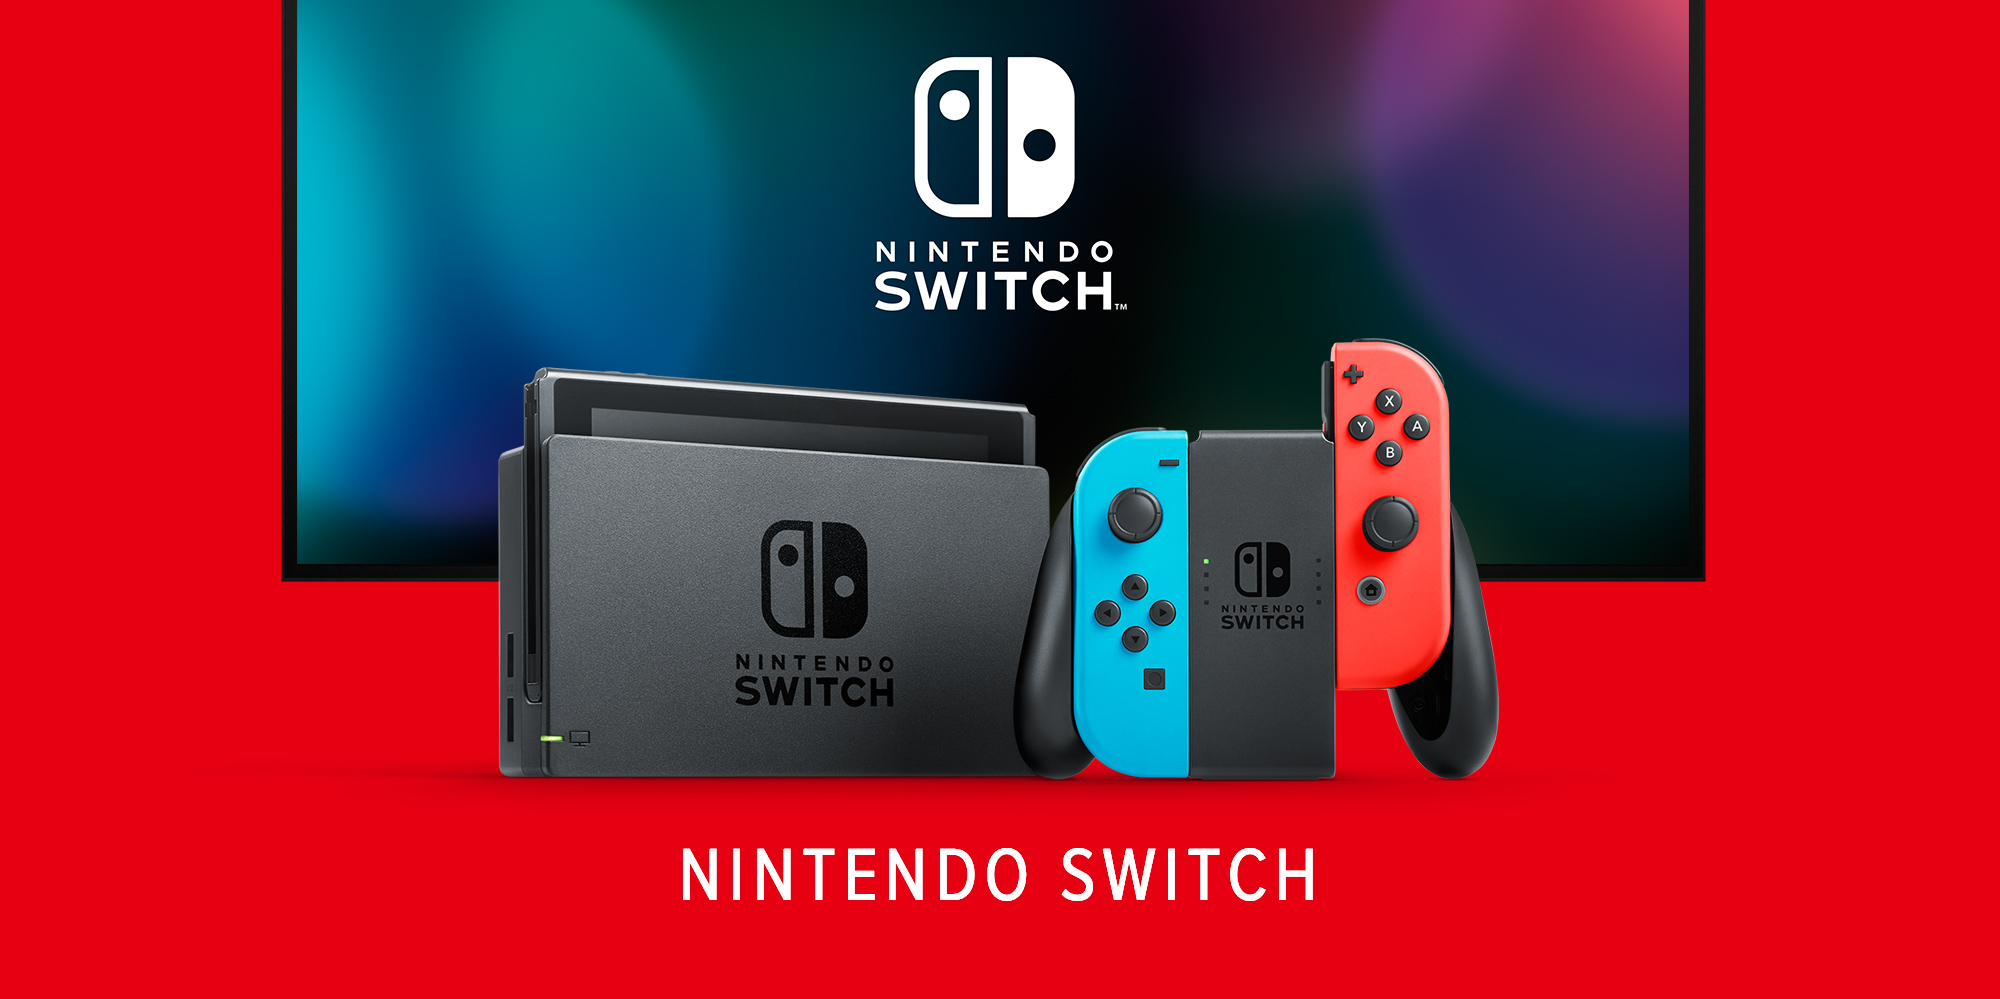 Se ha encontrado una solución al problema de deriva de los JoyCon en Nintendo Switch